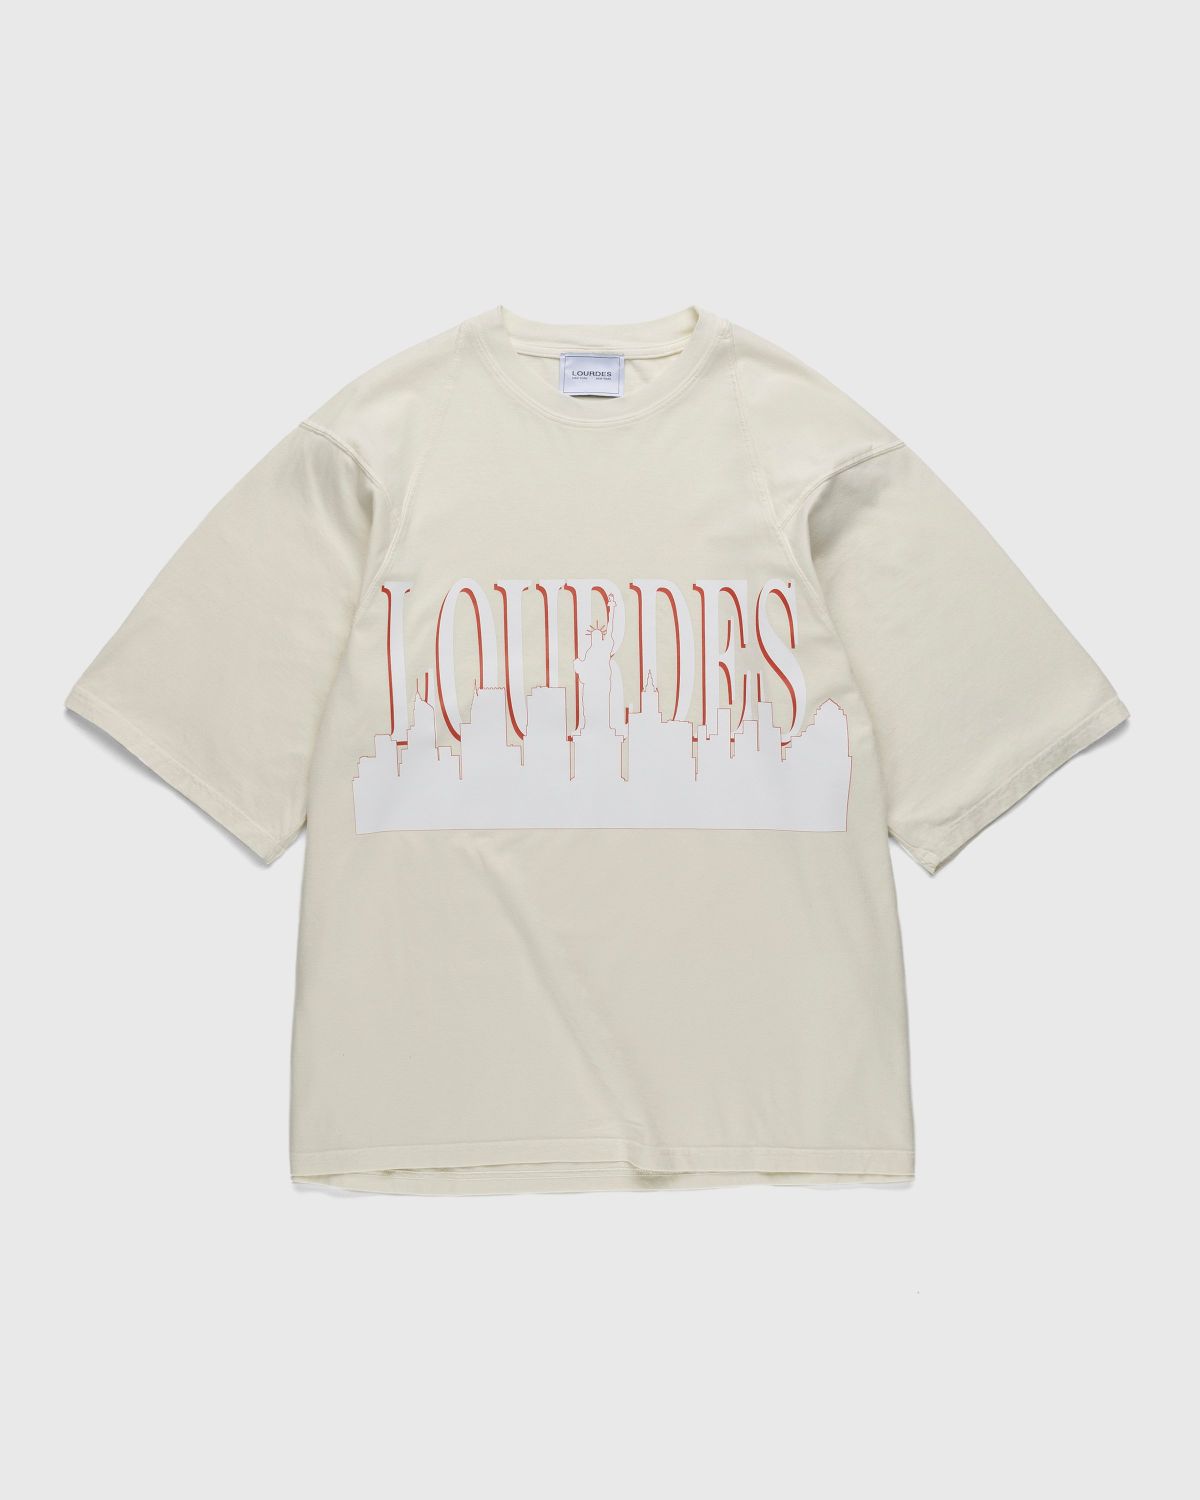 Lourdes New York – Skyline Tee Tinto Capo Cream - T-shirts - White - Image 1